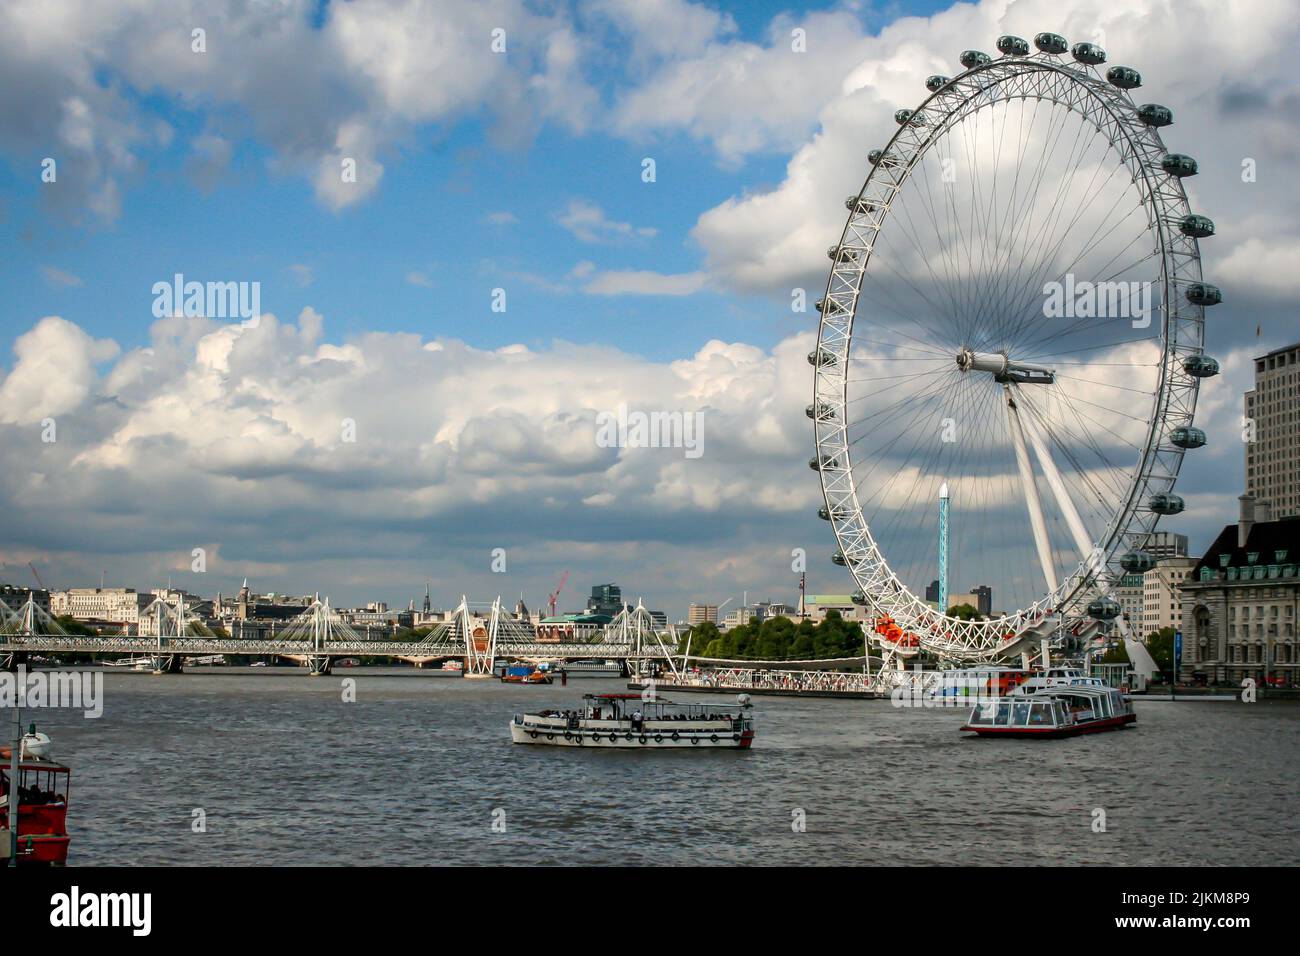 Una hermosa escena de las norias London Eye en Londres, el Reino Unido, con un cielo azul nublado Foto de stock